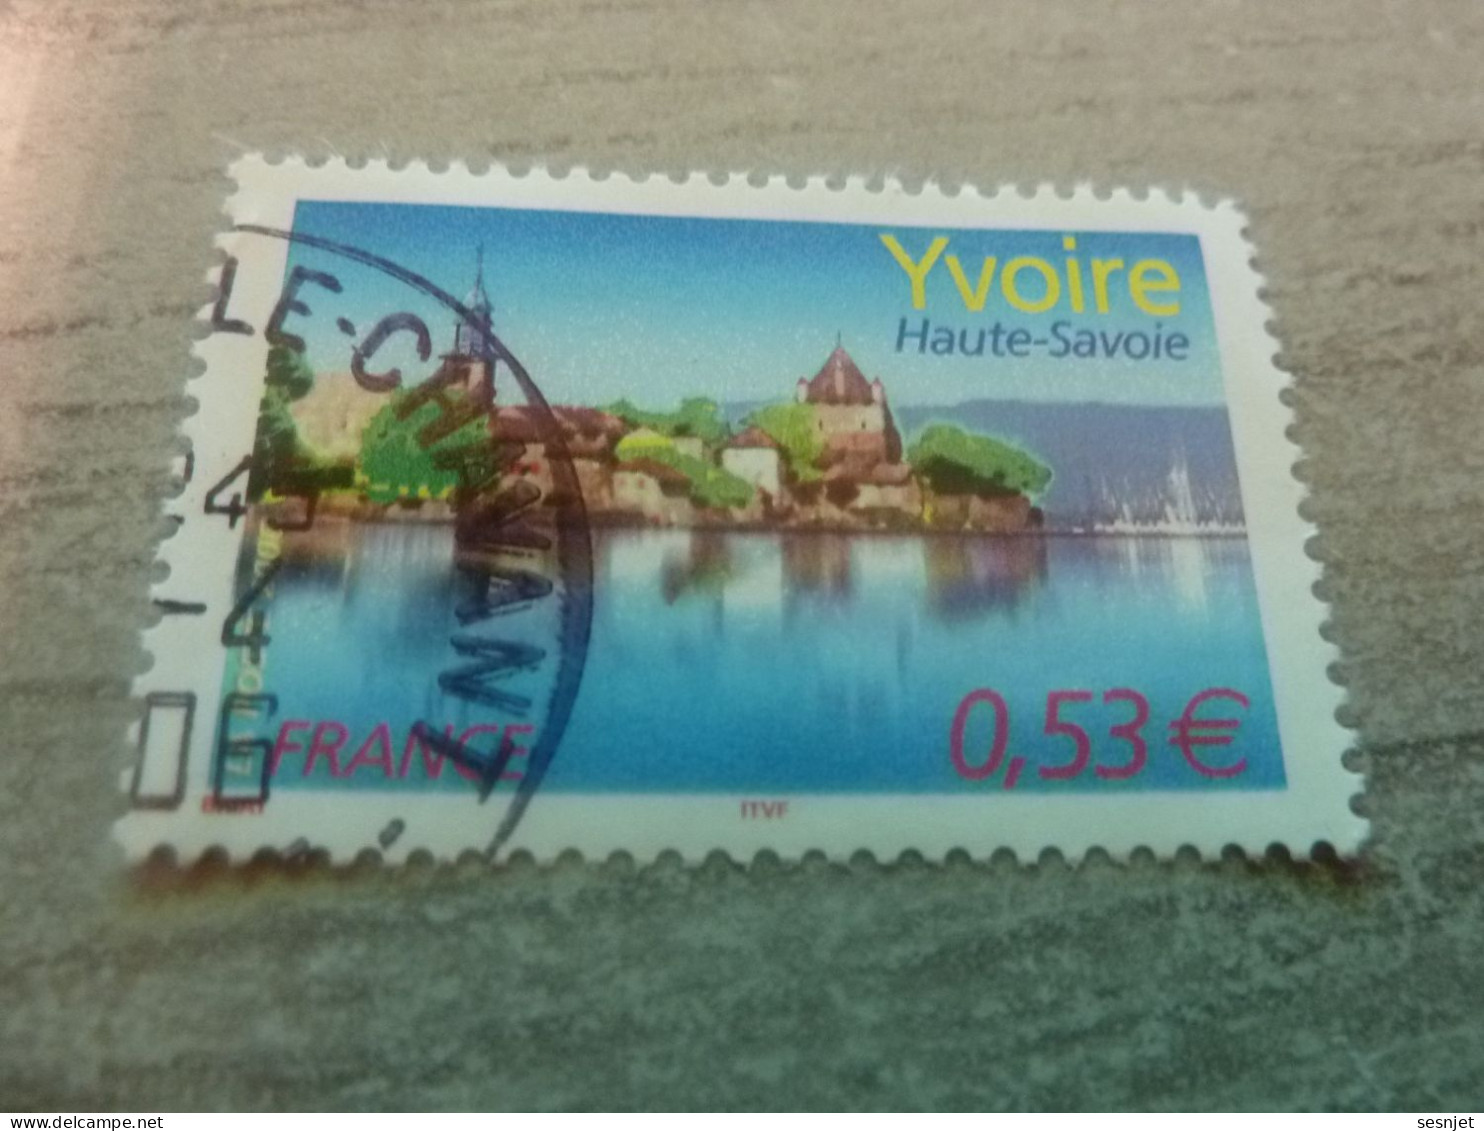 Yvoire - Lac Léman (Haute-Savoie) - 0.53€ - Yt 3892 - Multicolore - Oblitéré - Année 2006 - - Oblitérés